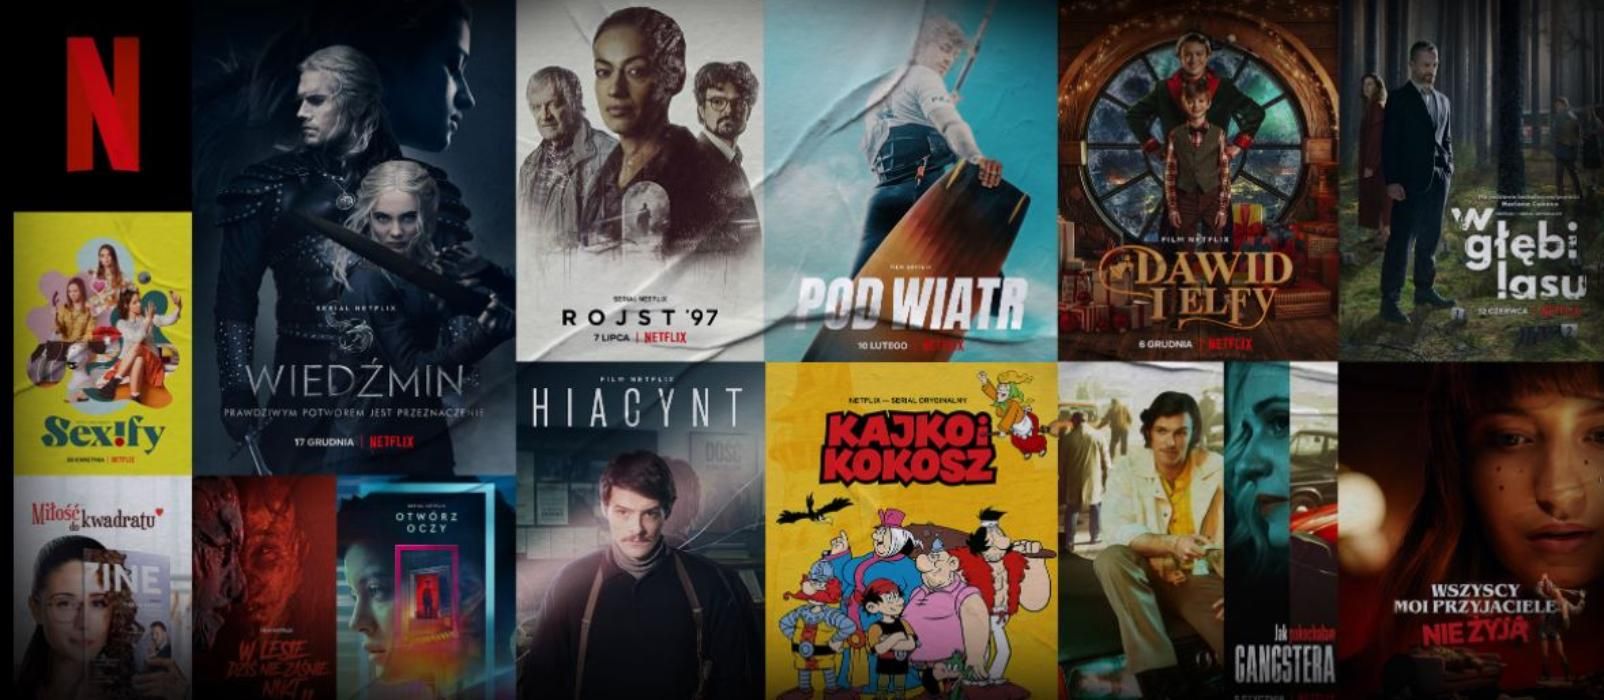 У зоні впливу буде й Україна: Netflix відкриє офіс у Варшаві - Кіно